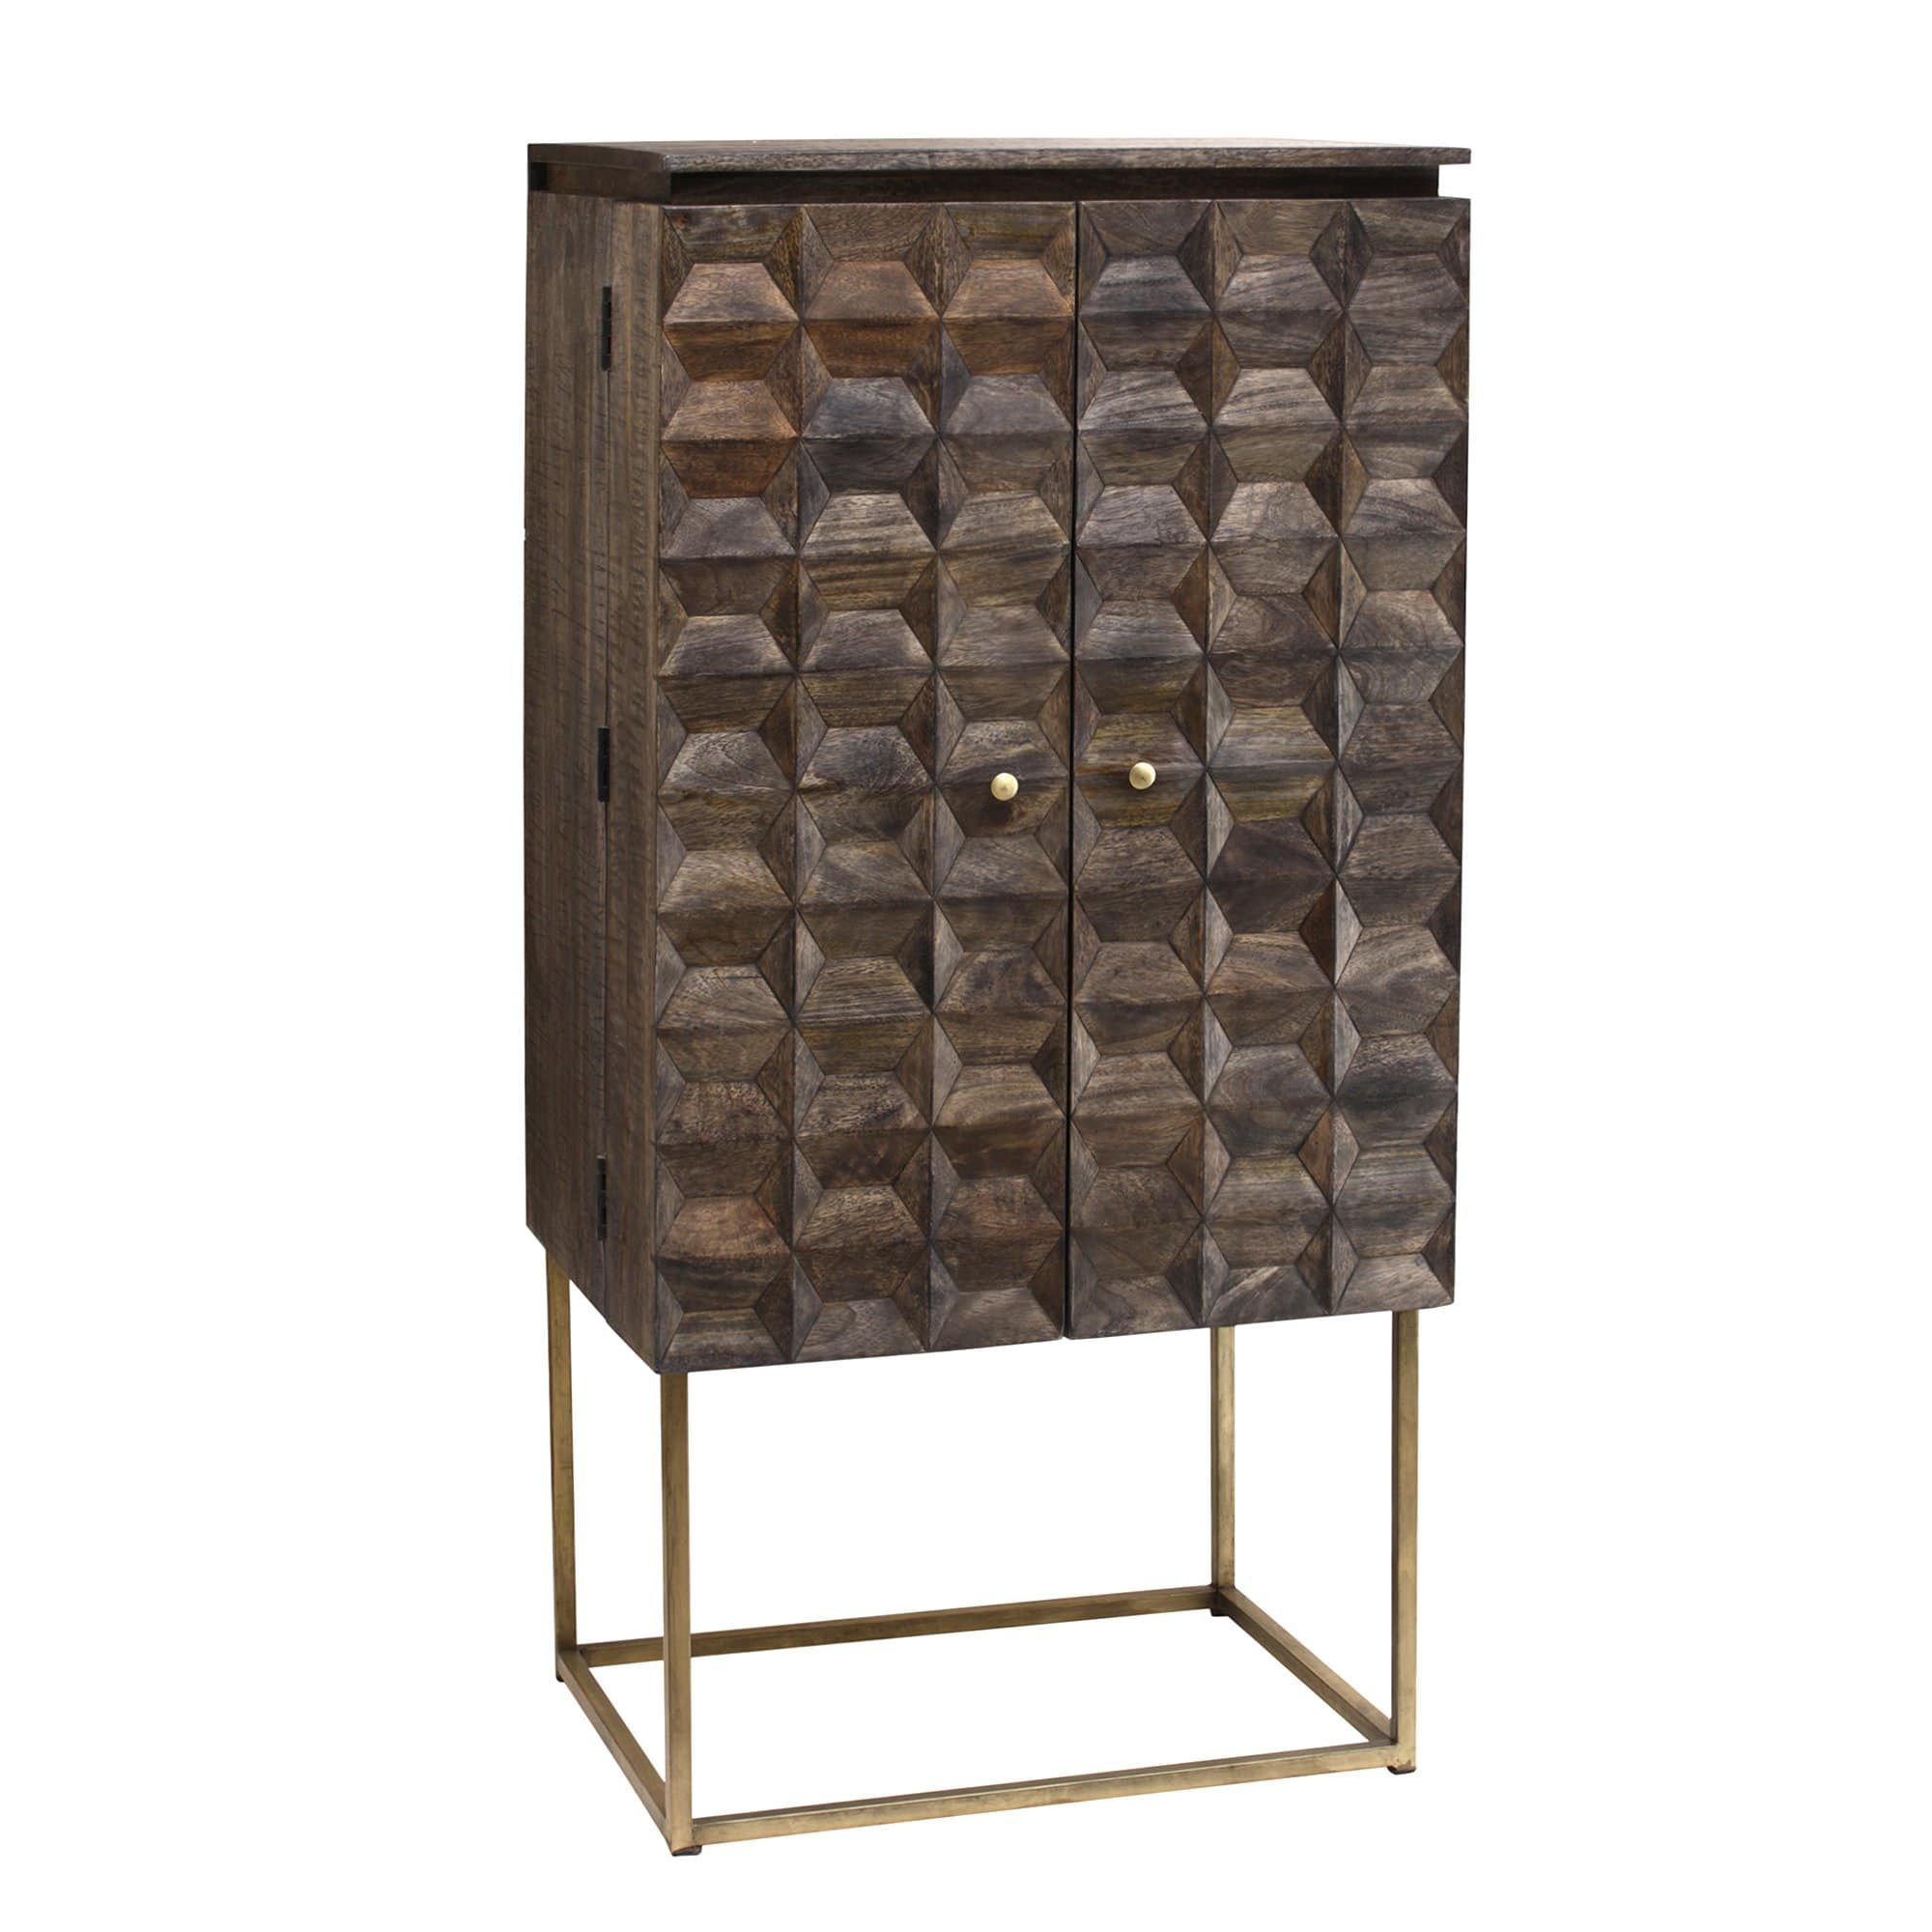 Alec dark brown Mango wood wine bar cabinet metal Gratis bezorgen - online bestellen bij Potz Wonen